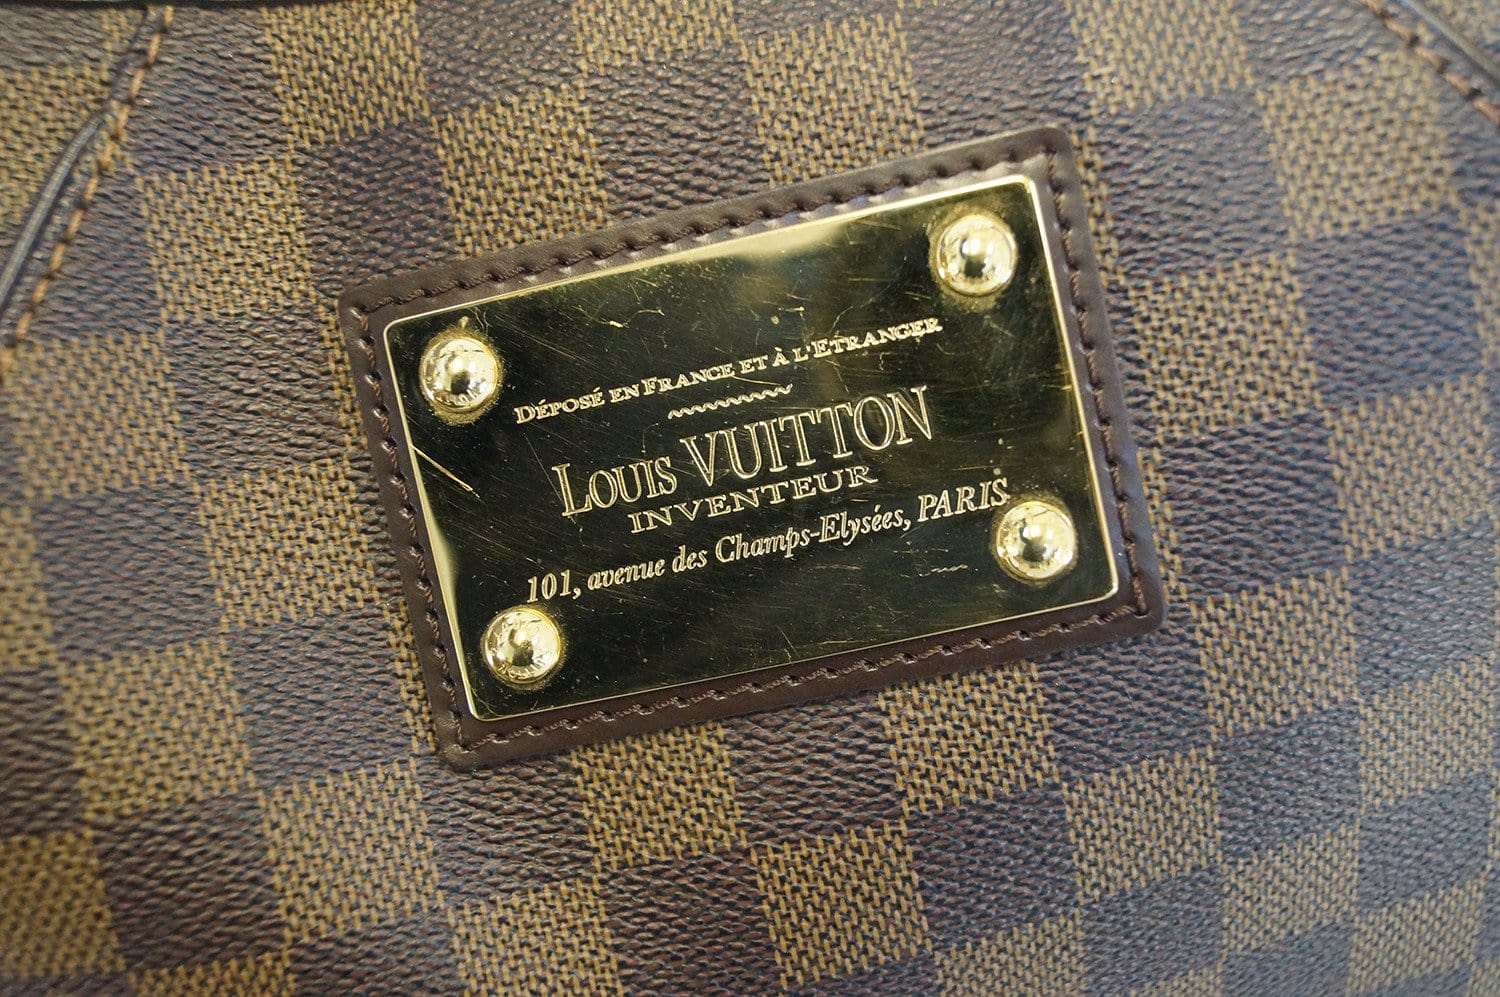 PRELOVED Louis Vuitton Damier Ebene Thames GM Shoulder Bag AR4038